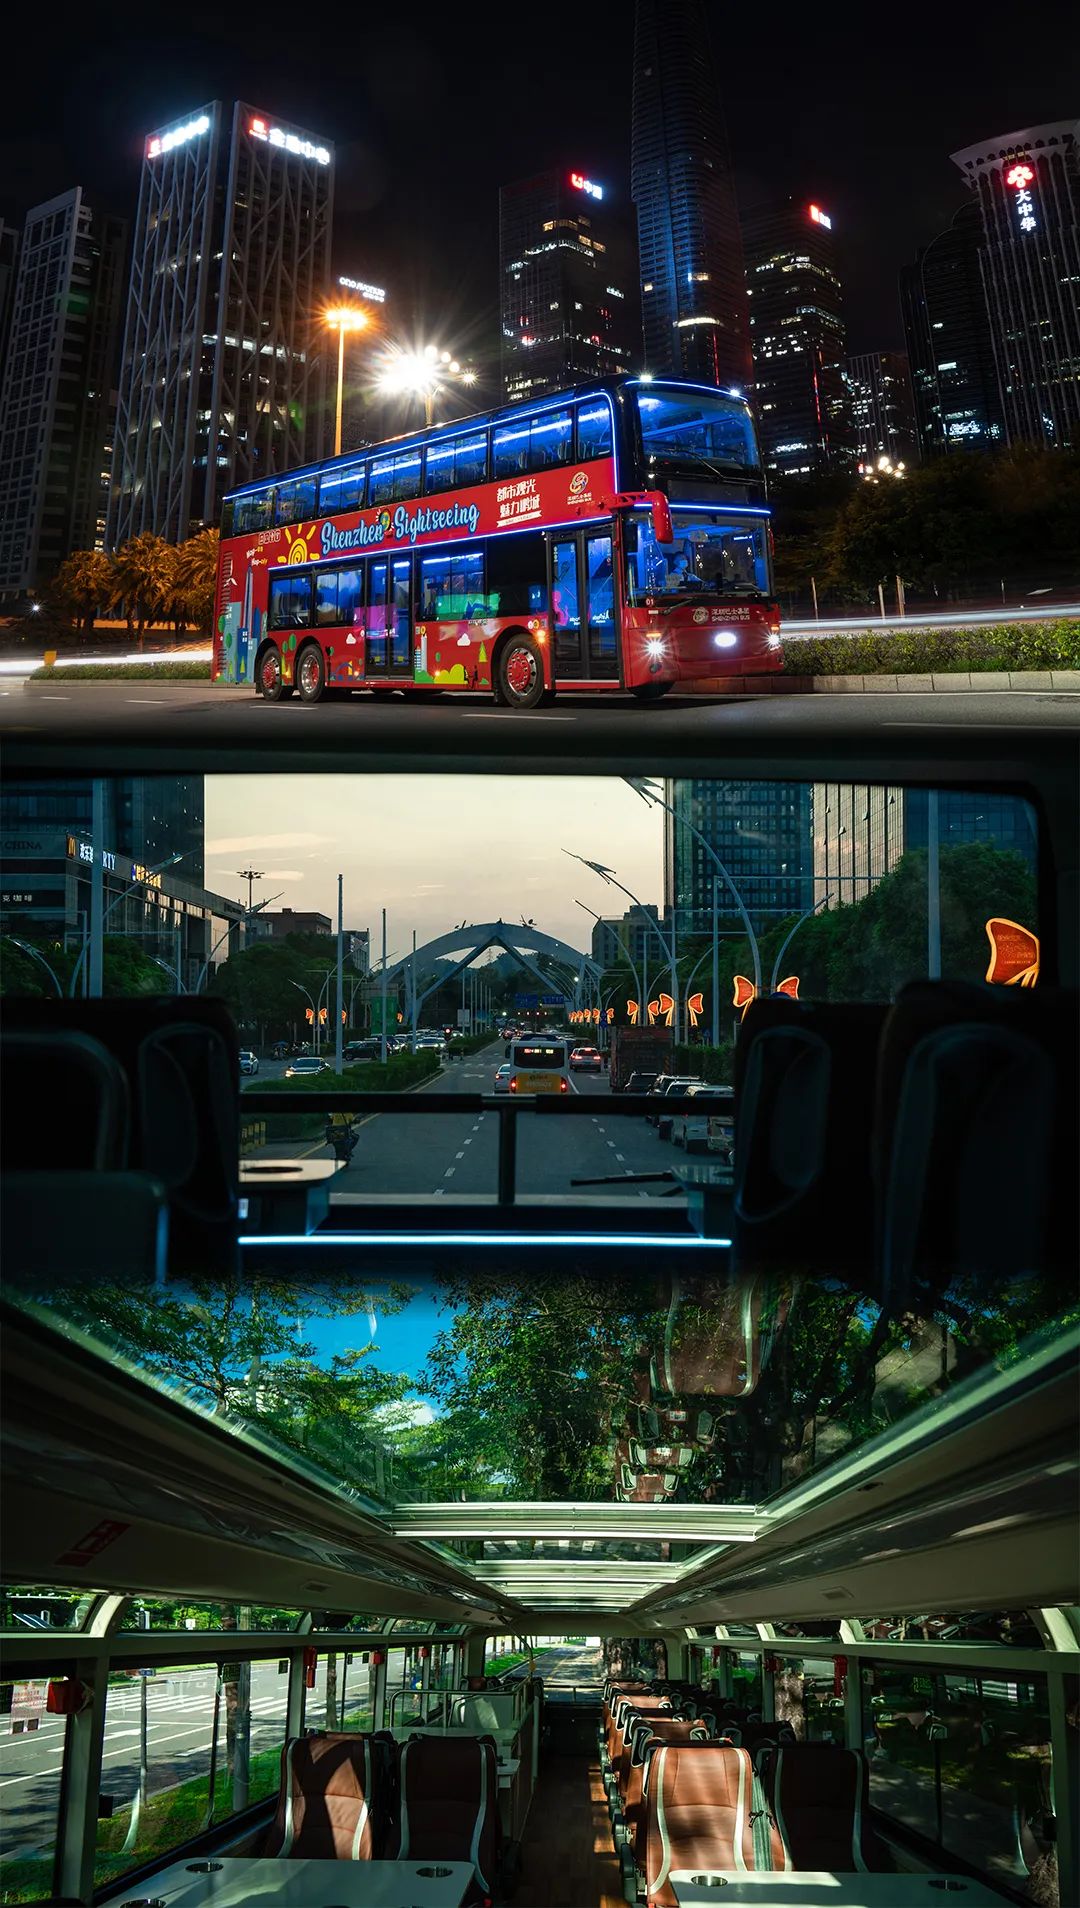 这个周末，不如来龙岗吧！明天深圳观光巴士绿线正式开通